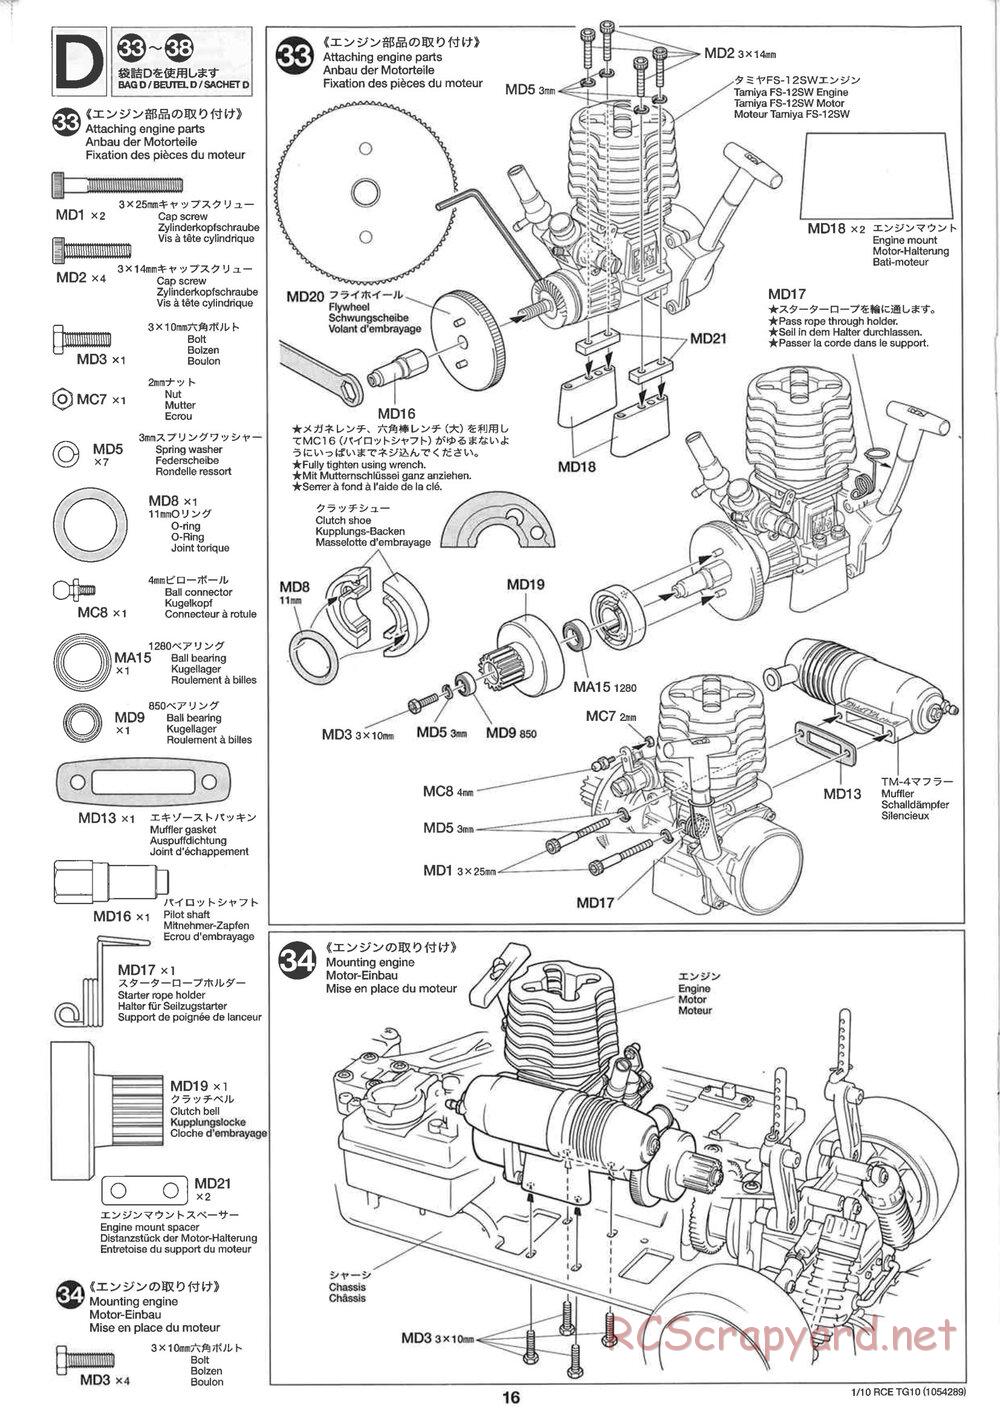 Tamiya - TG10 Mk.1 Chassis - Manual - Page 16